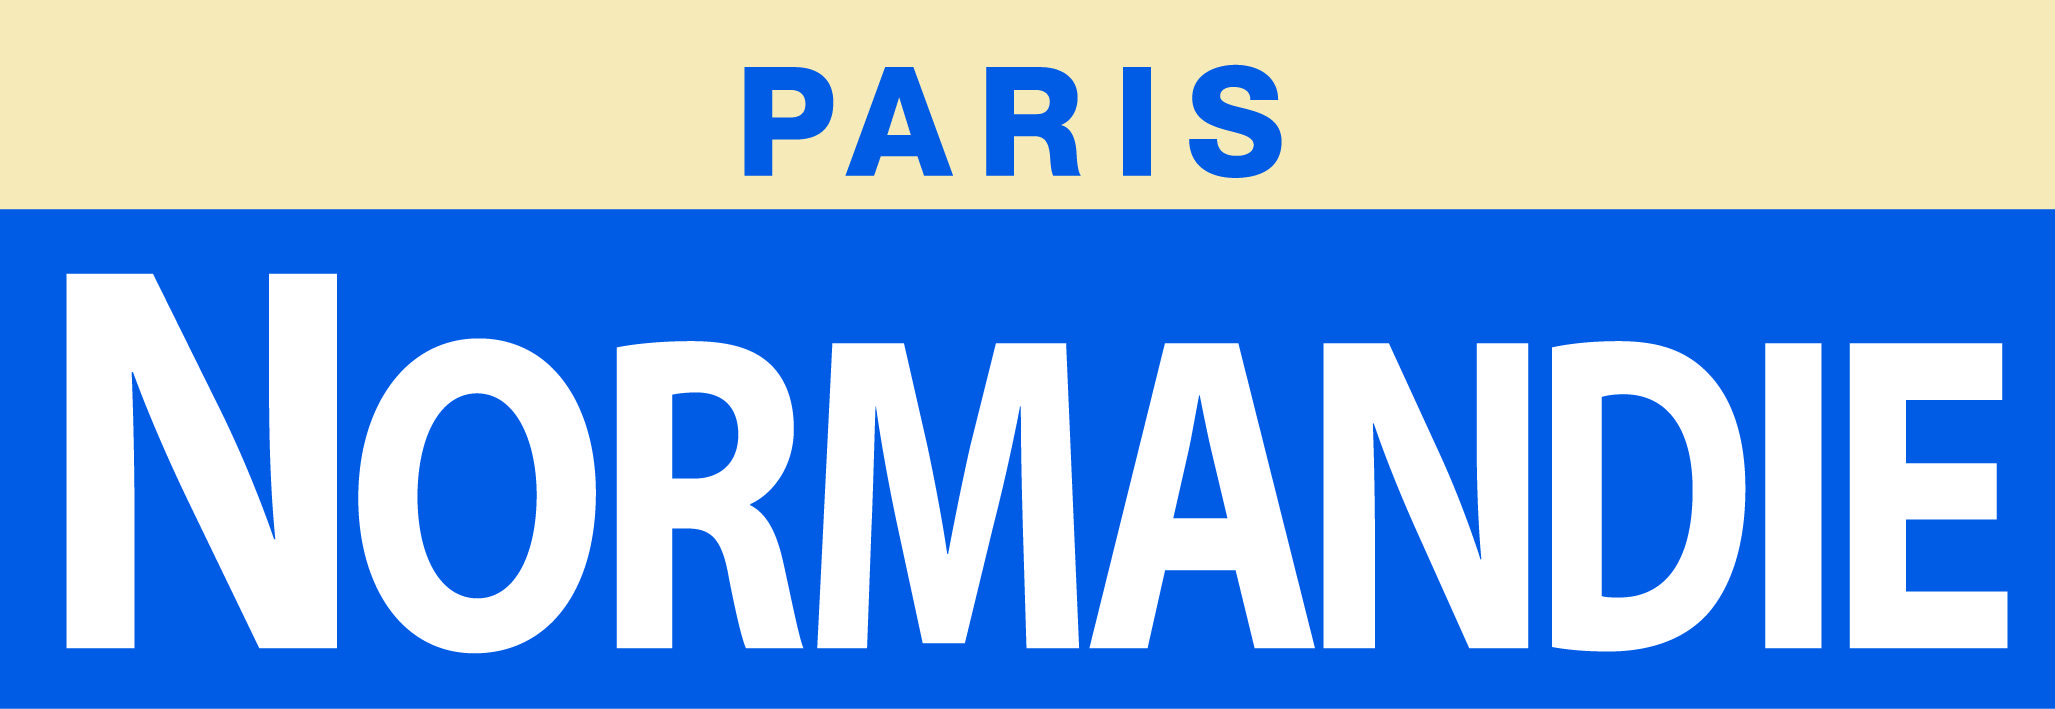 Logo-paris-Normandie_2017_Edilivre